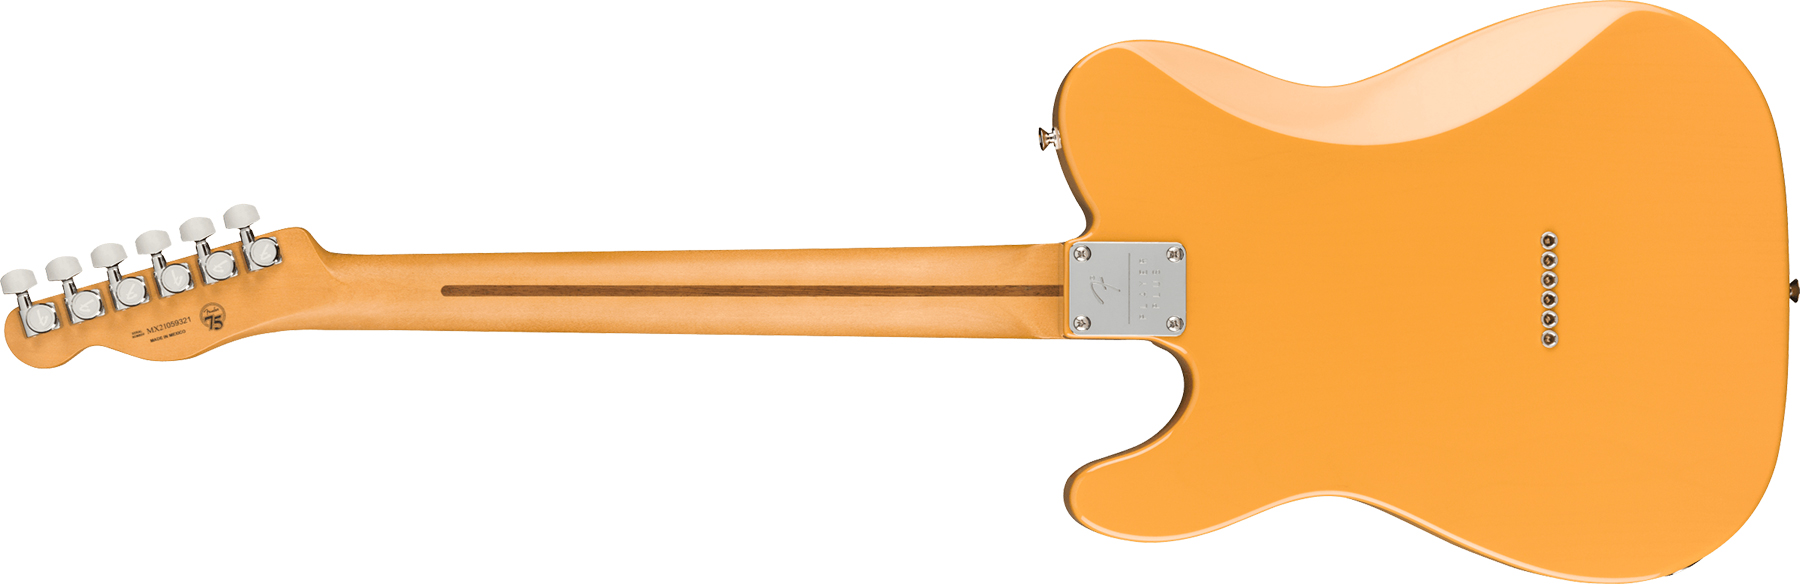 Fender Tele Player Plus Nashville Mex 3s Ht Mn - Butterscotch Blonde - Televorm elektrische gitaar - Variation 1